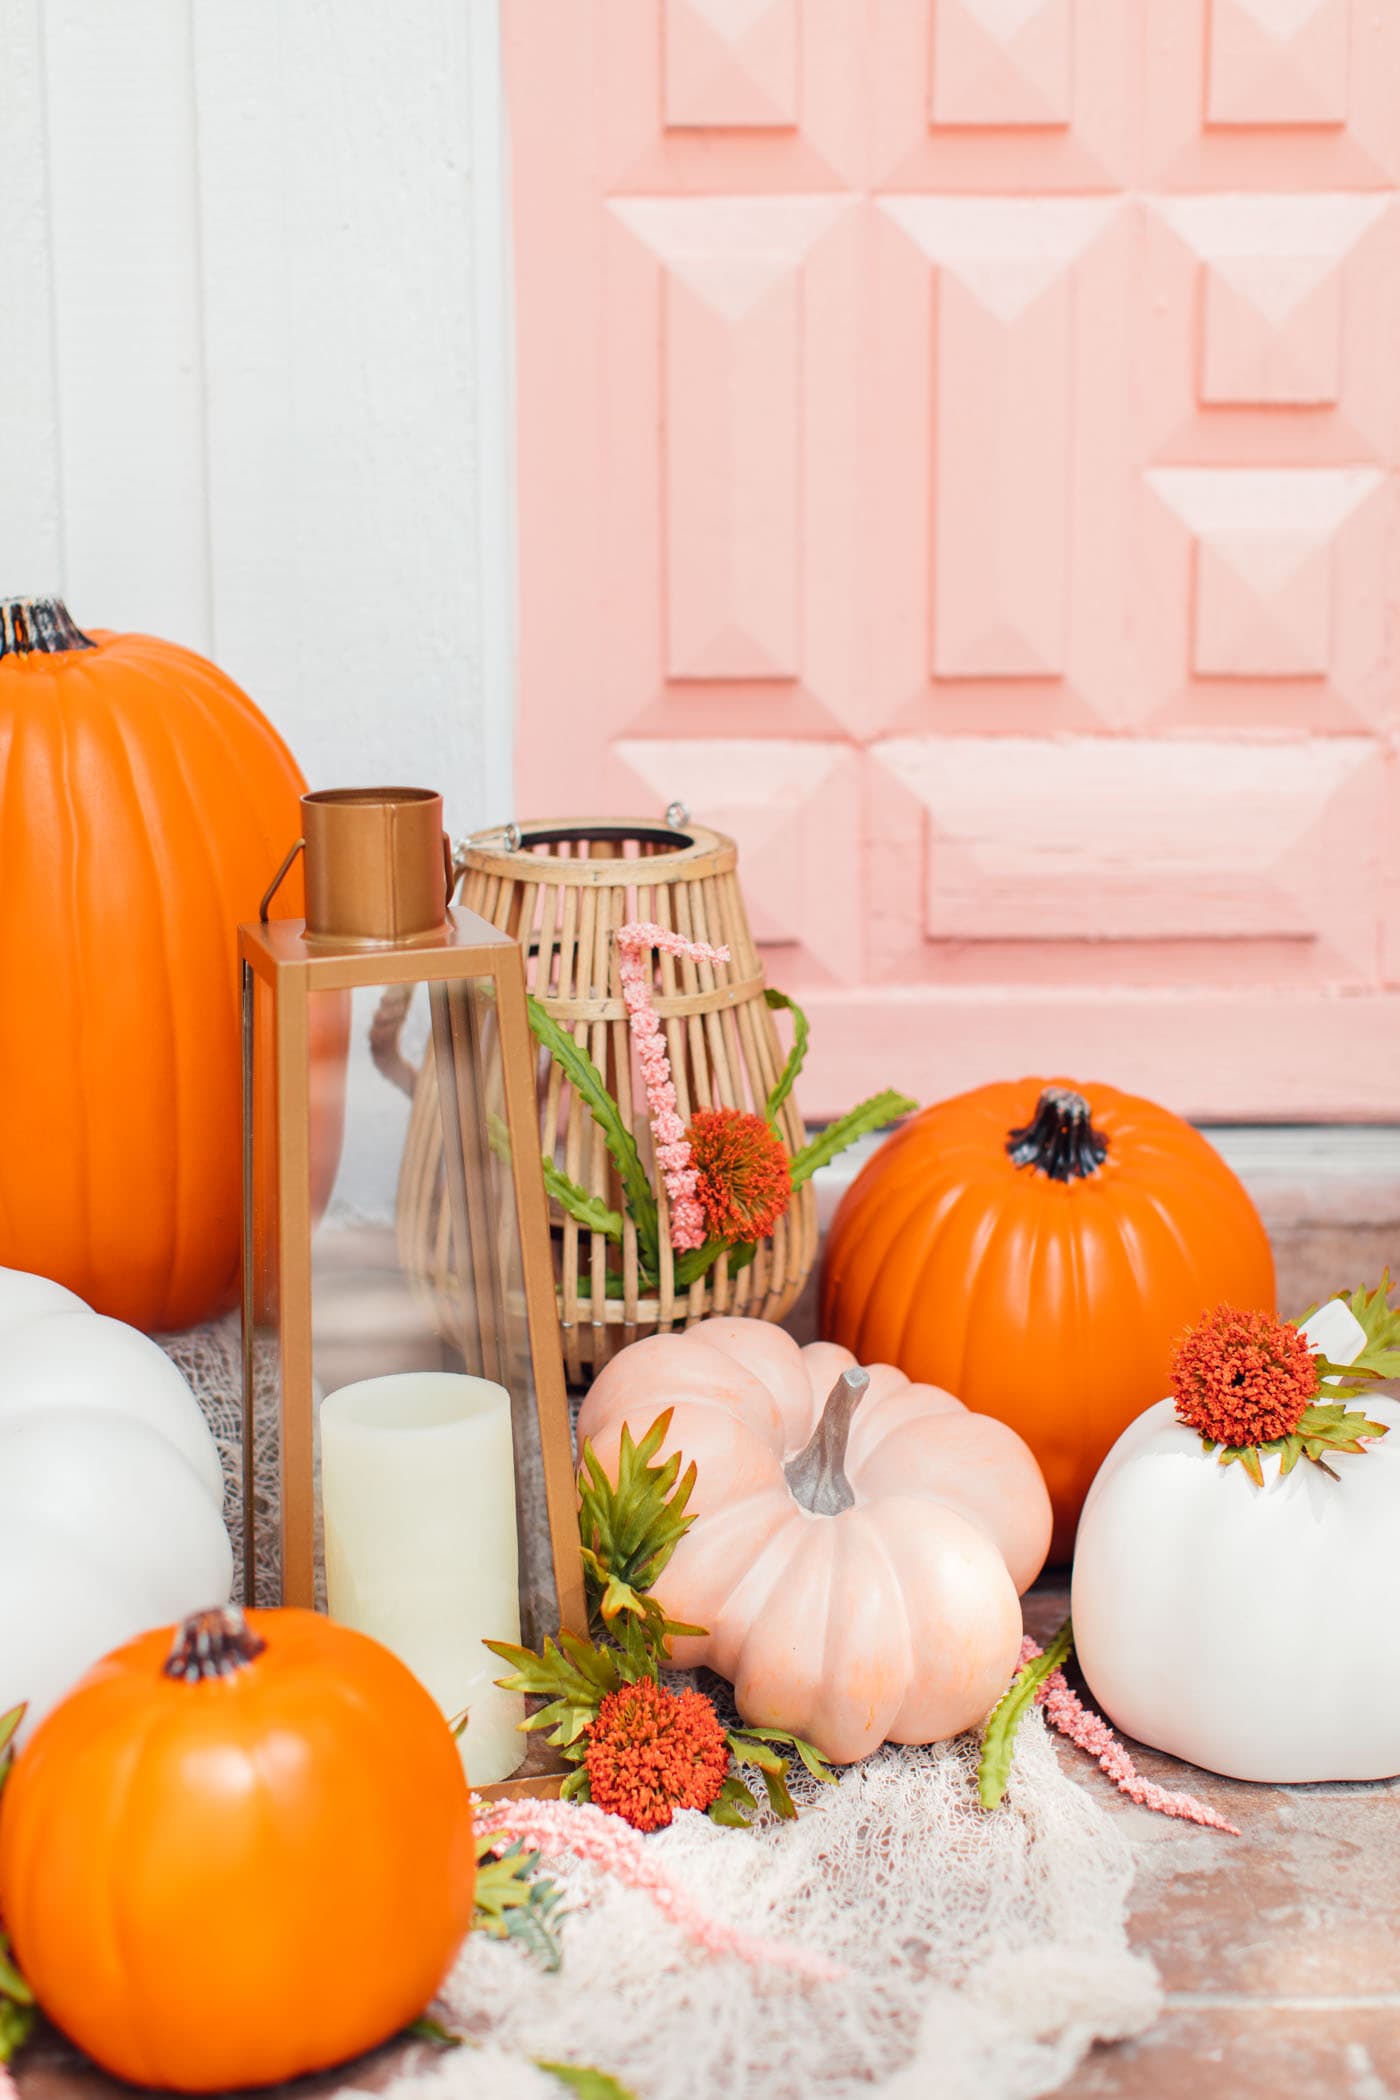 photo of pumpkins in front of a pink door